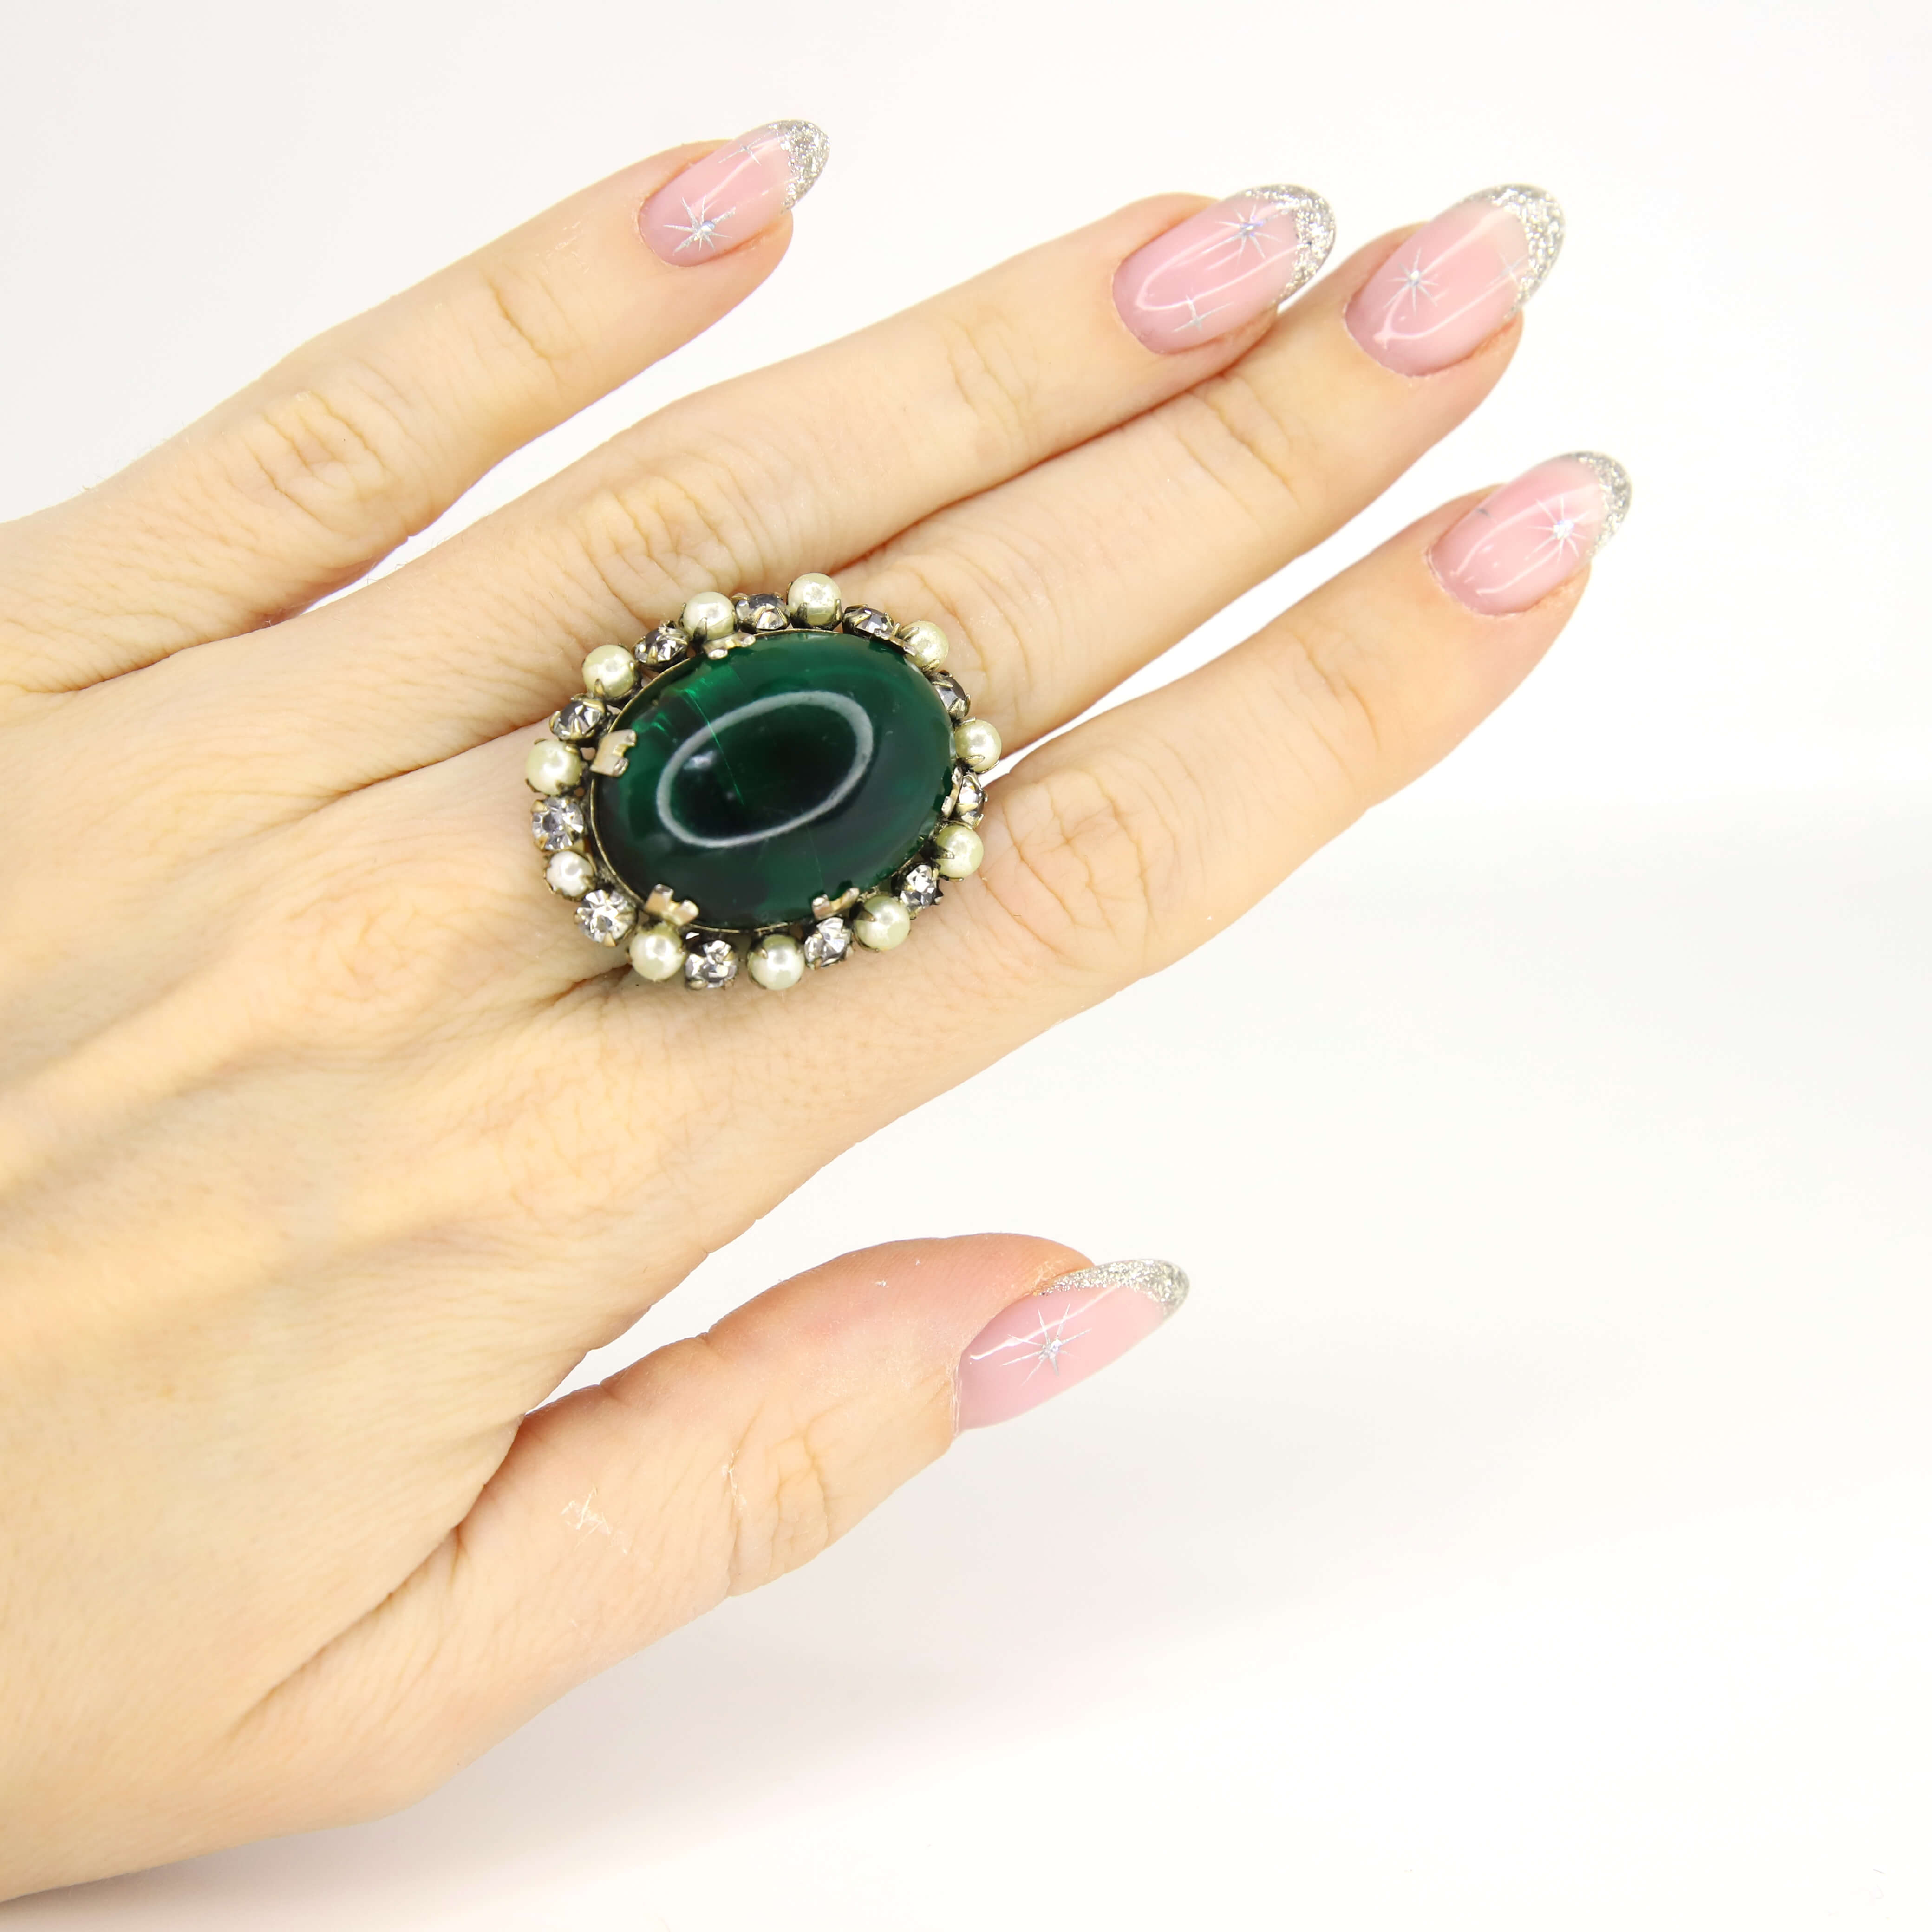 Винтажное кольцо размер 16,5-18 ВИДЕО, цвет Зеленый, фото 1